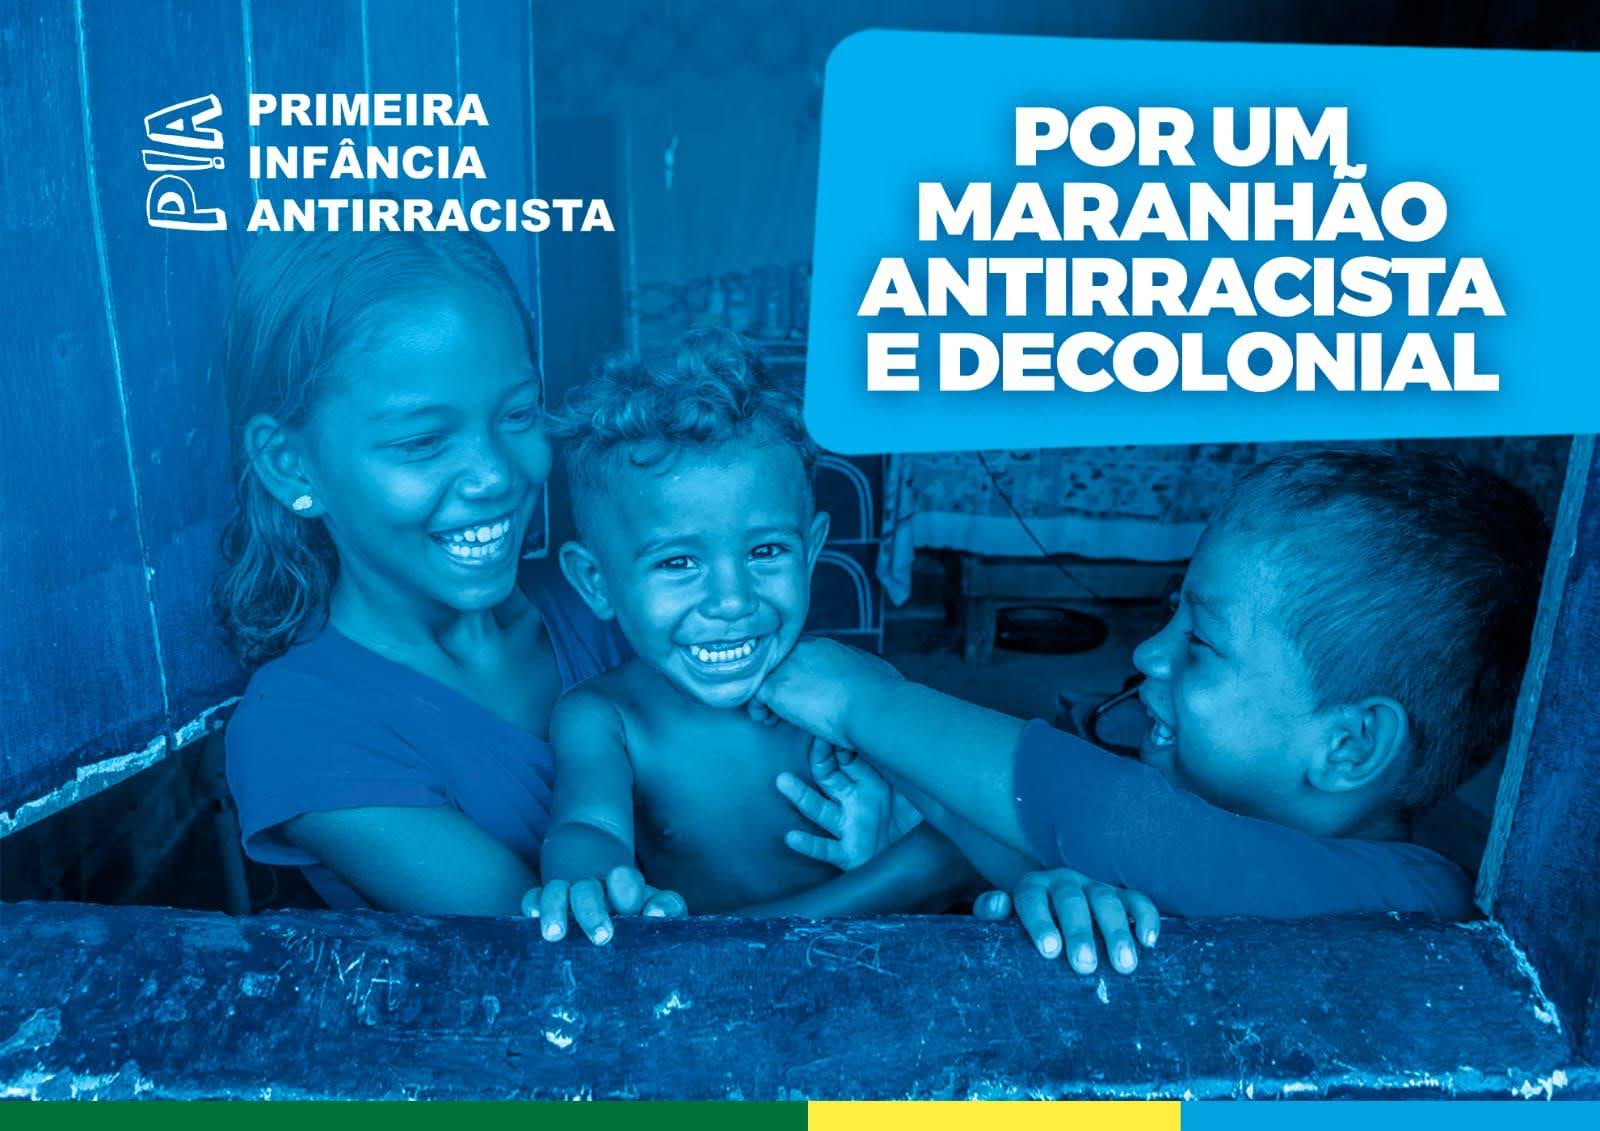 Crianças do Maranhão pousando para um cartaz